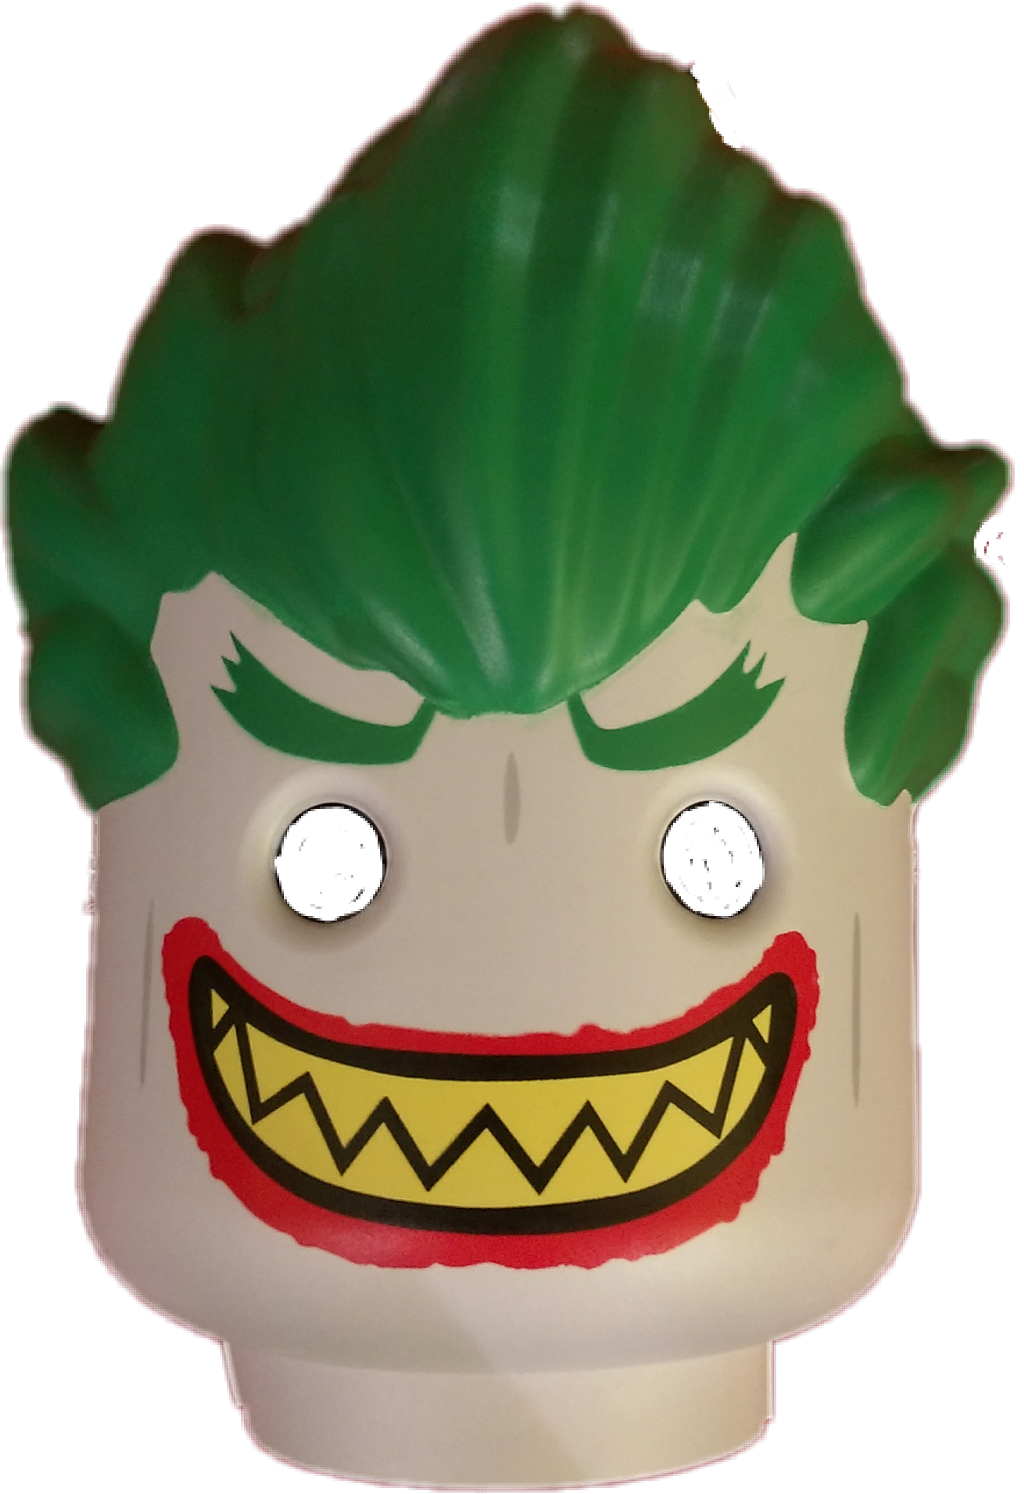 Joker clipart joker mask, Joker joker mask Transparent FREE for ...